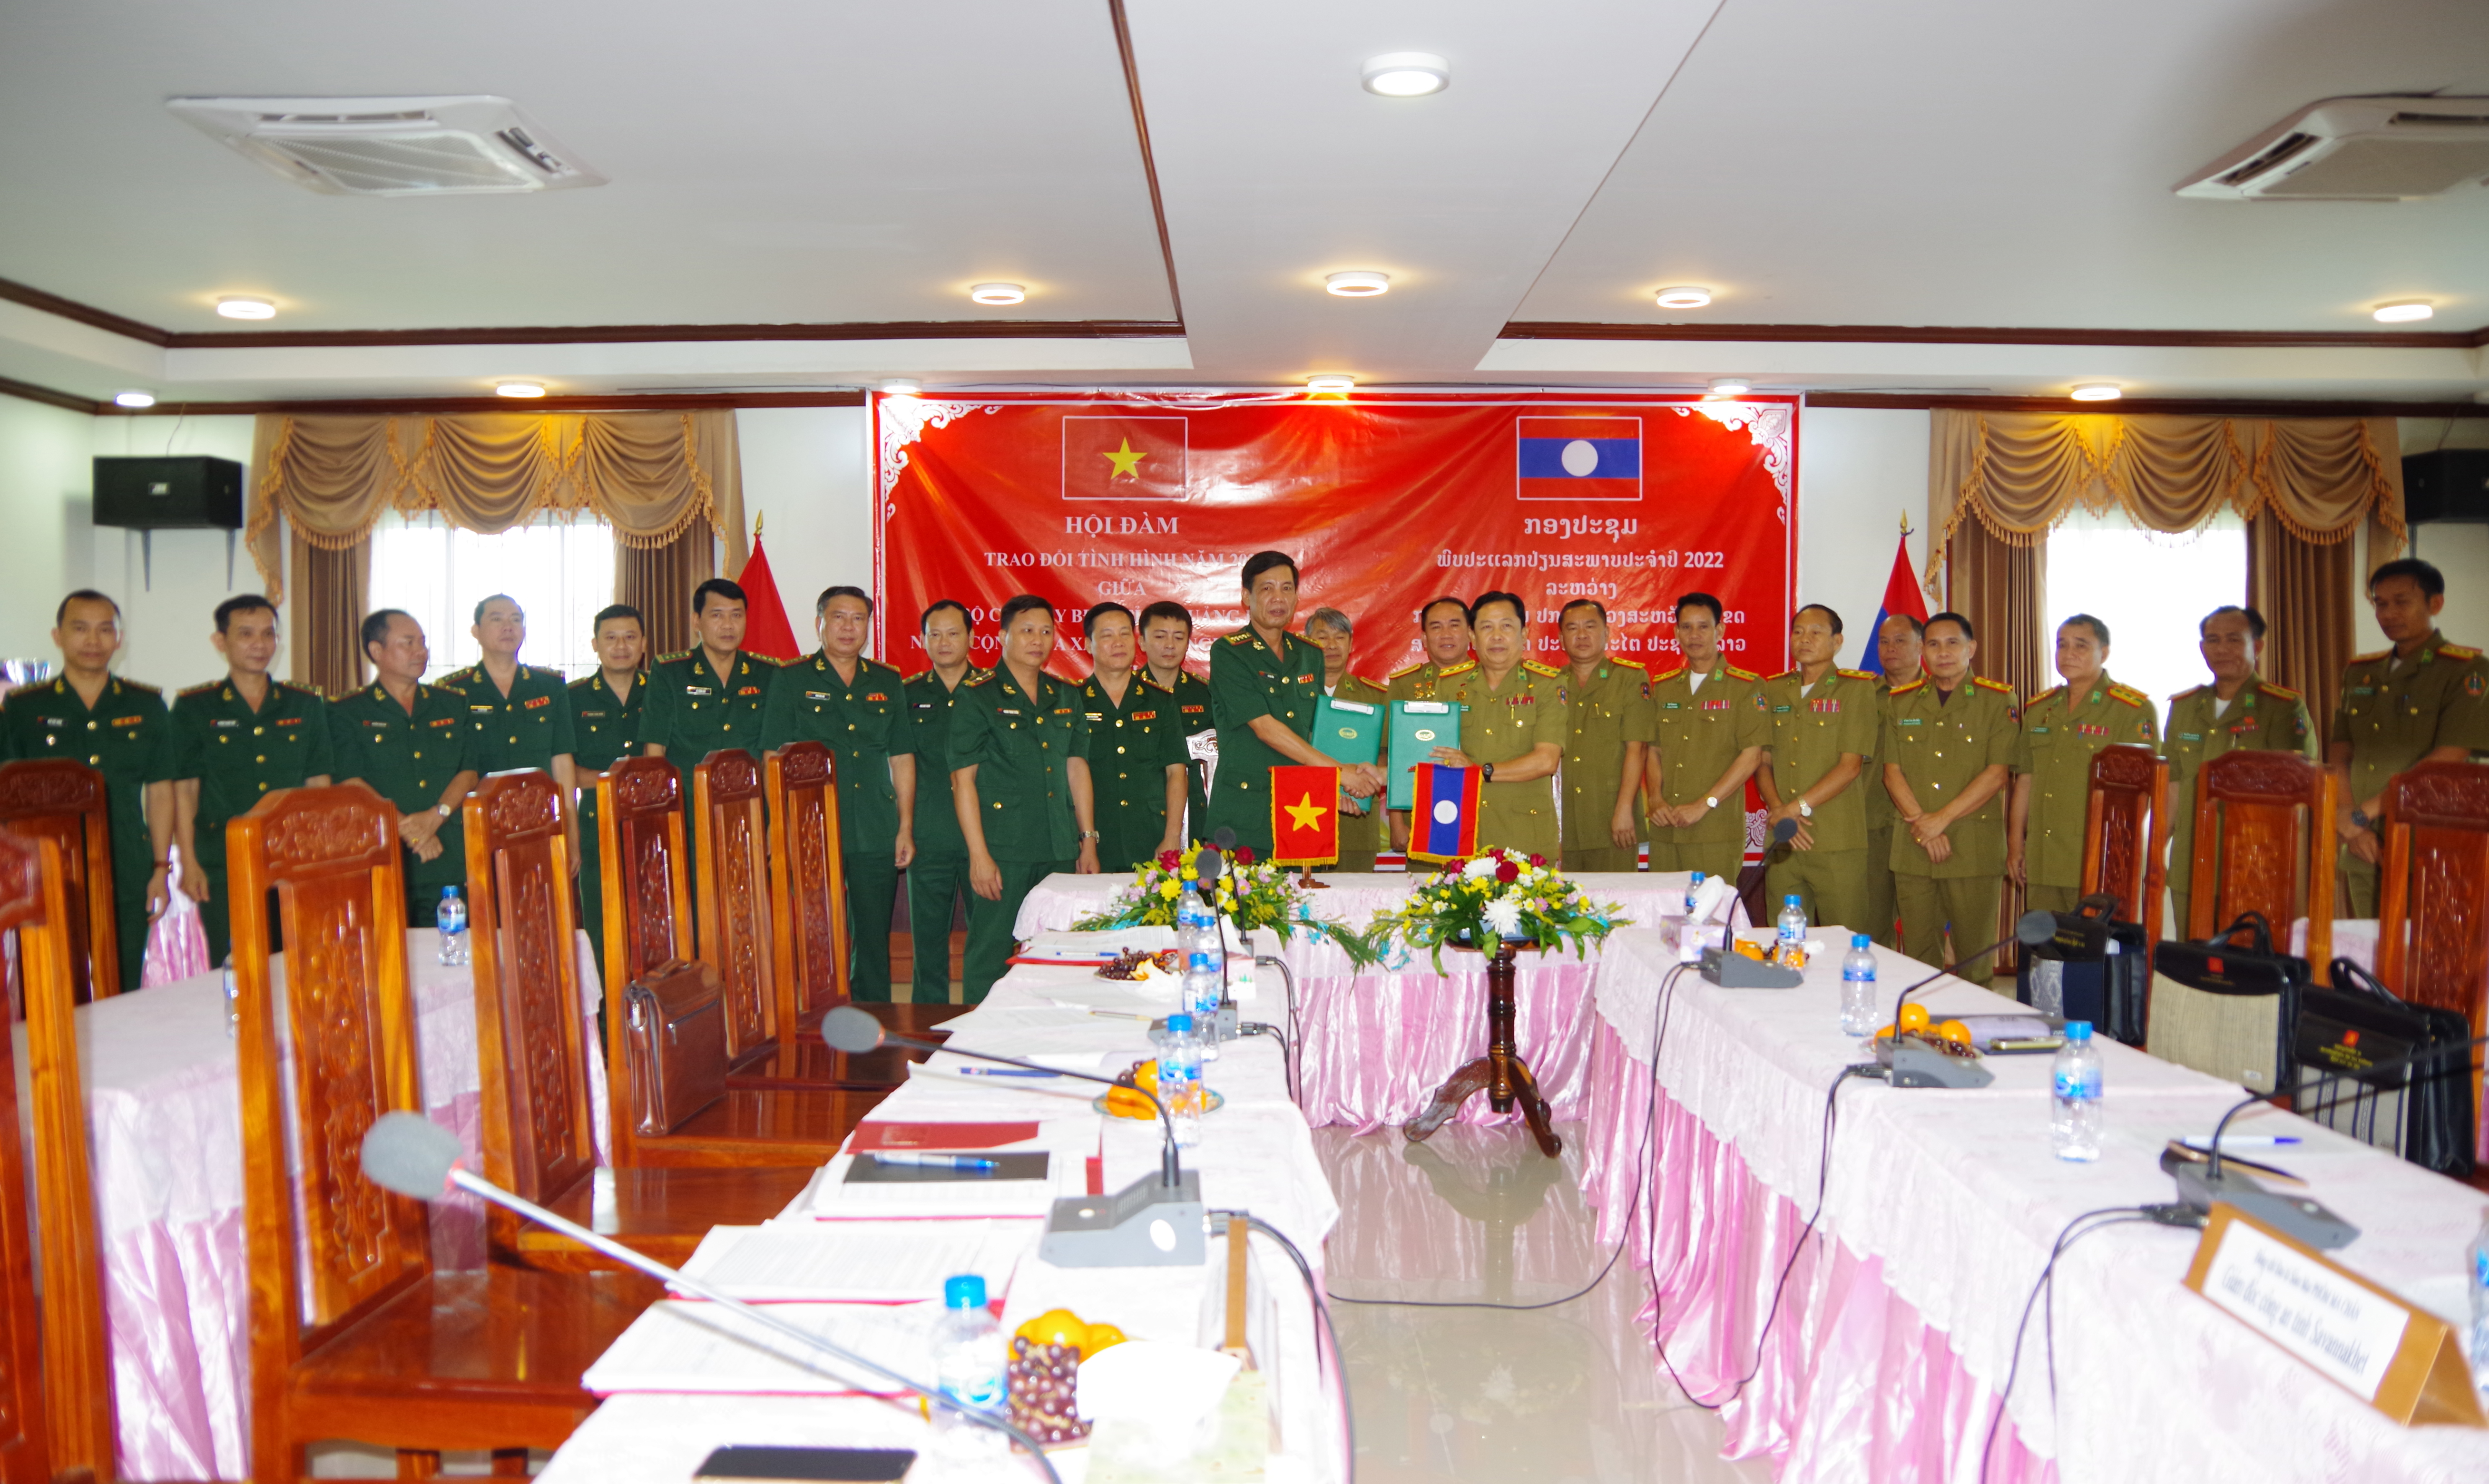 Đại tá Lê Văn Tiến, Chính ủy BĐBP Quảng Bình và đại tá Sổm Mai Phôm Ma Chăn, Giám đốc Công an tỉnh Savannakhet ký kết và trao đổi biên bản Hội đàm năm 2022 giữa hai đơn vị.